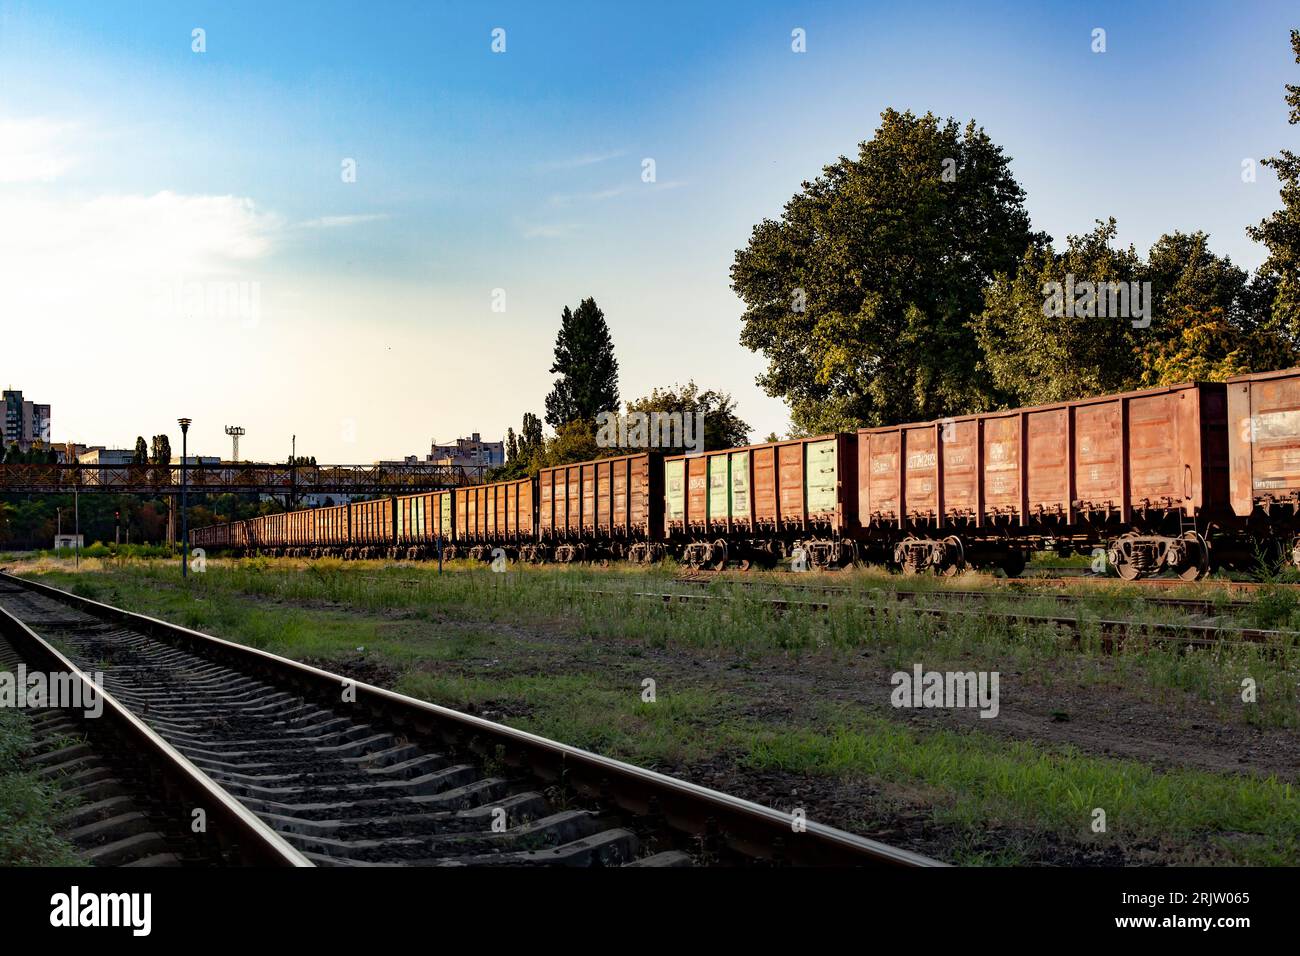 Wagons de fret dans une station logistique de distribution. Exportation, importation, commerce. Concept de logistique ferroviaire. Banque D'Images